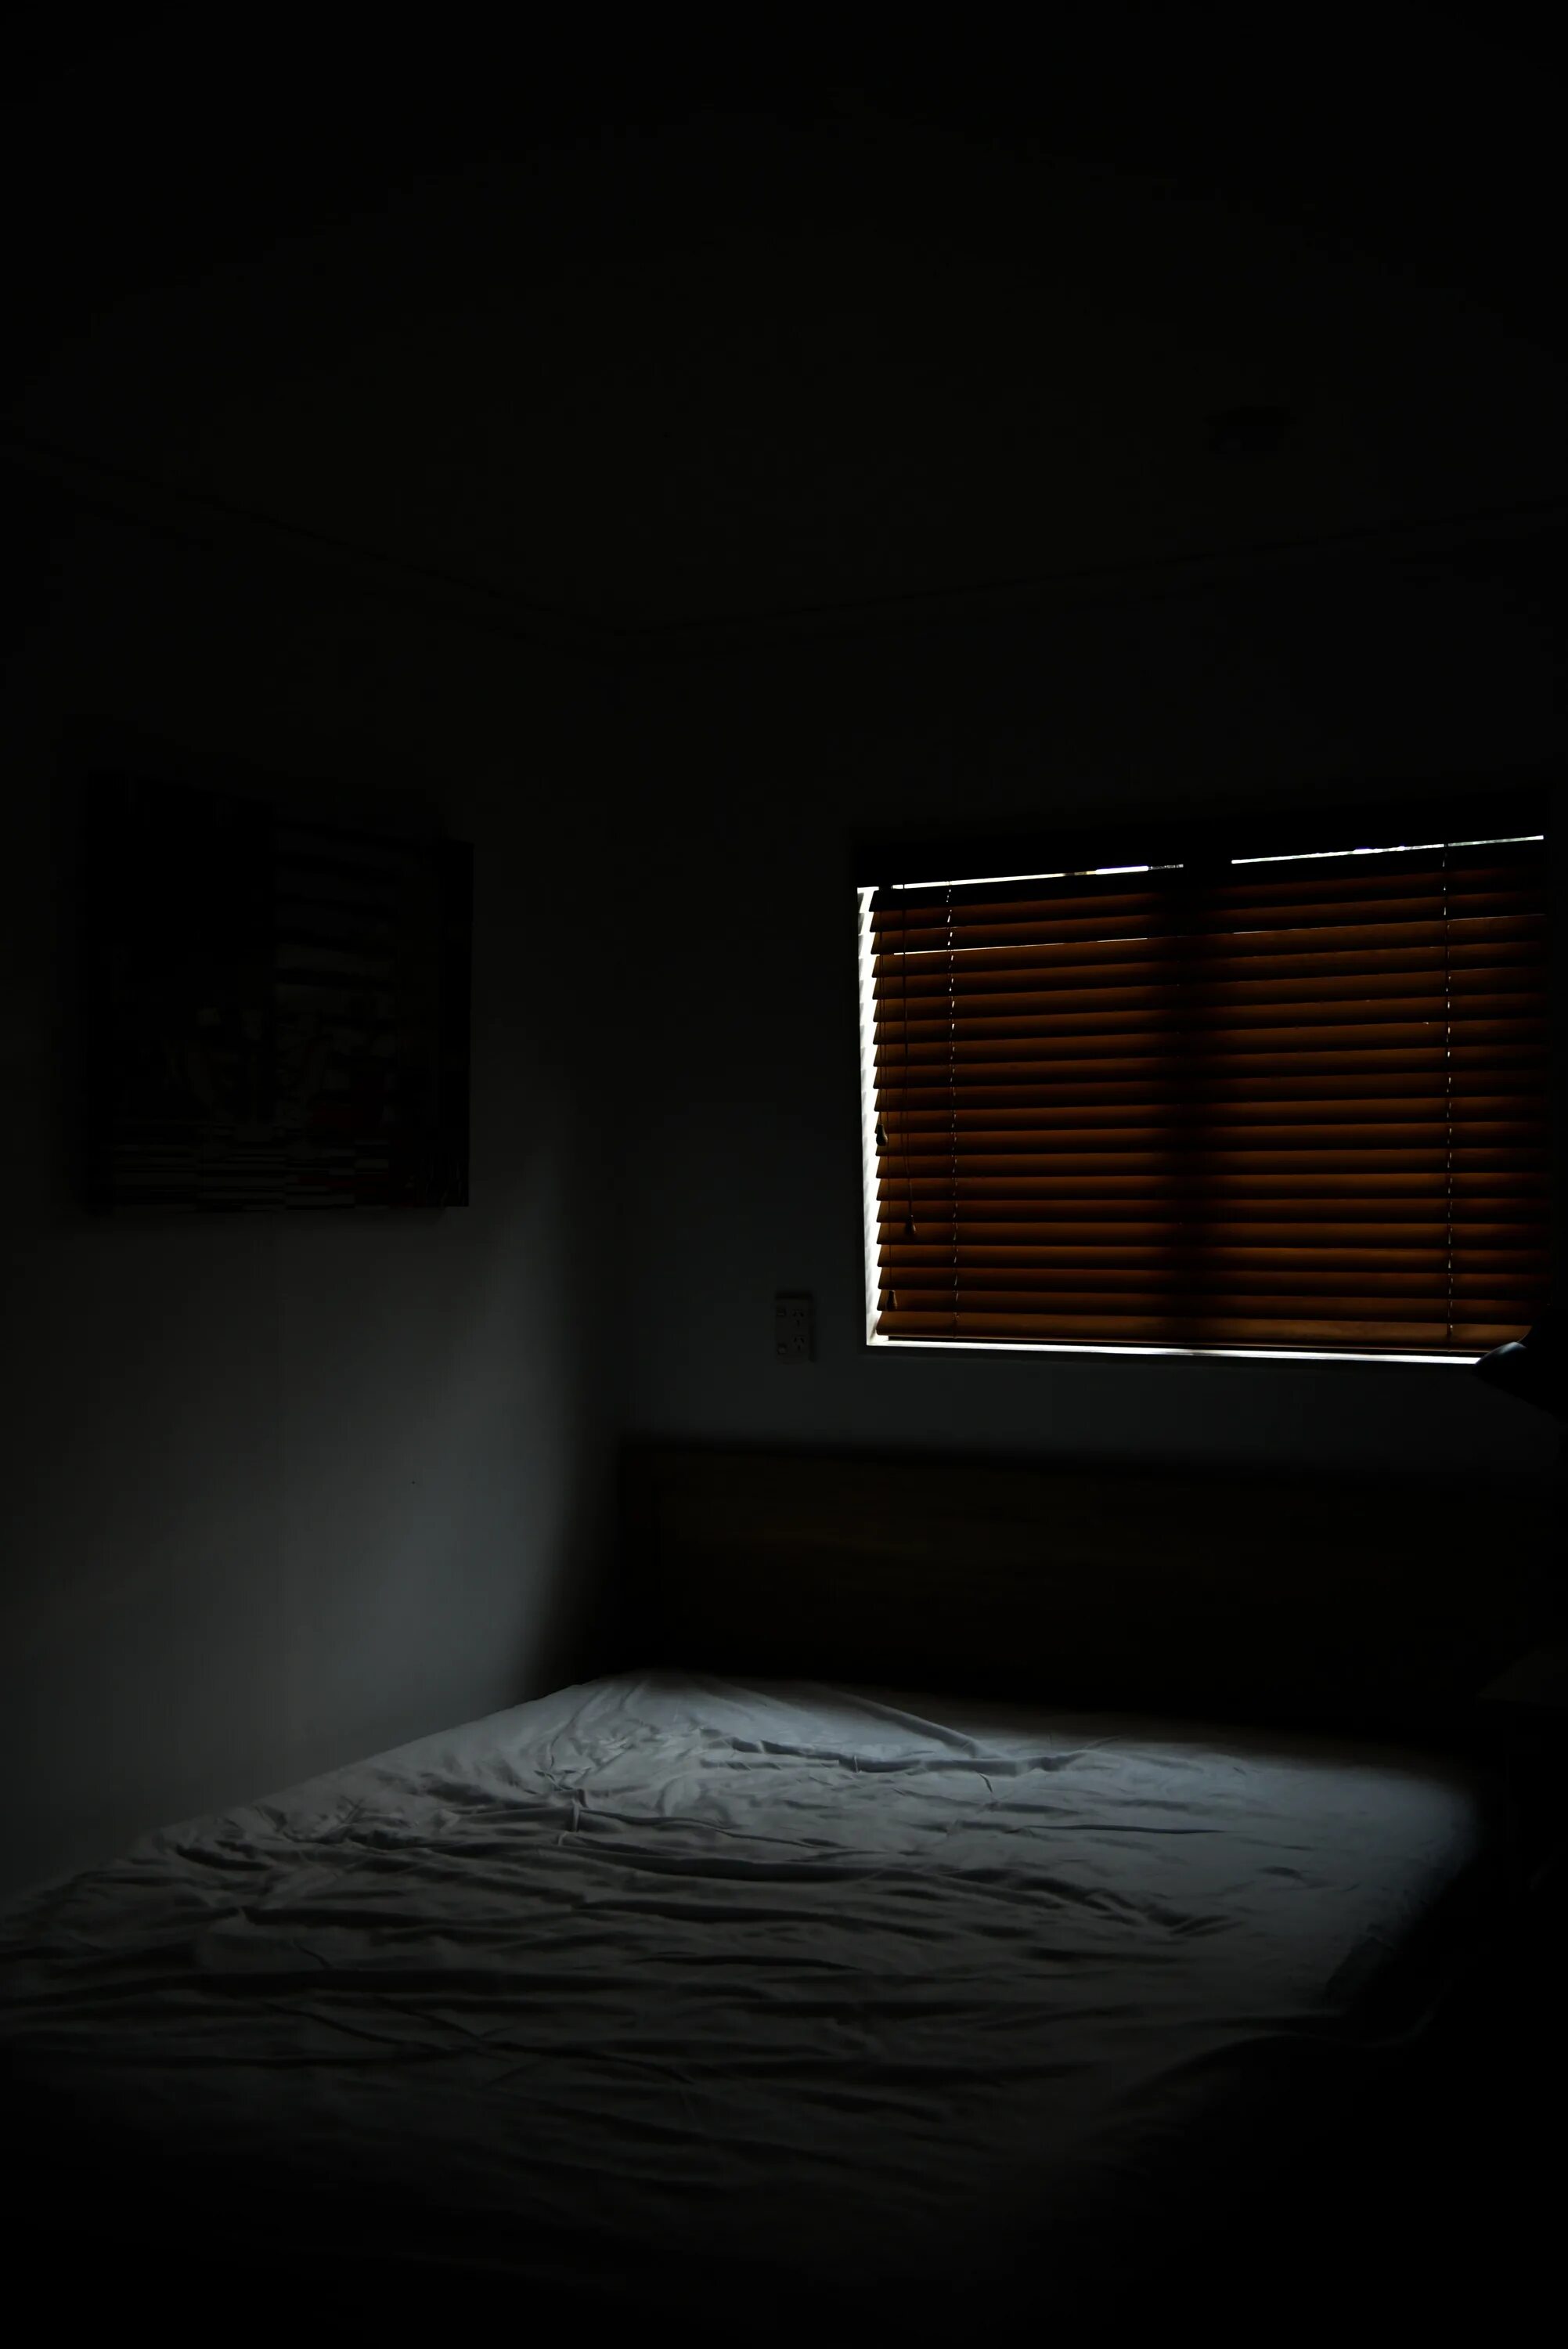 Темная комната читать. Темная комната. Кровать ночью. В комнате темно. Тесная комната с крлватью.